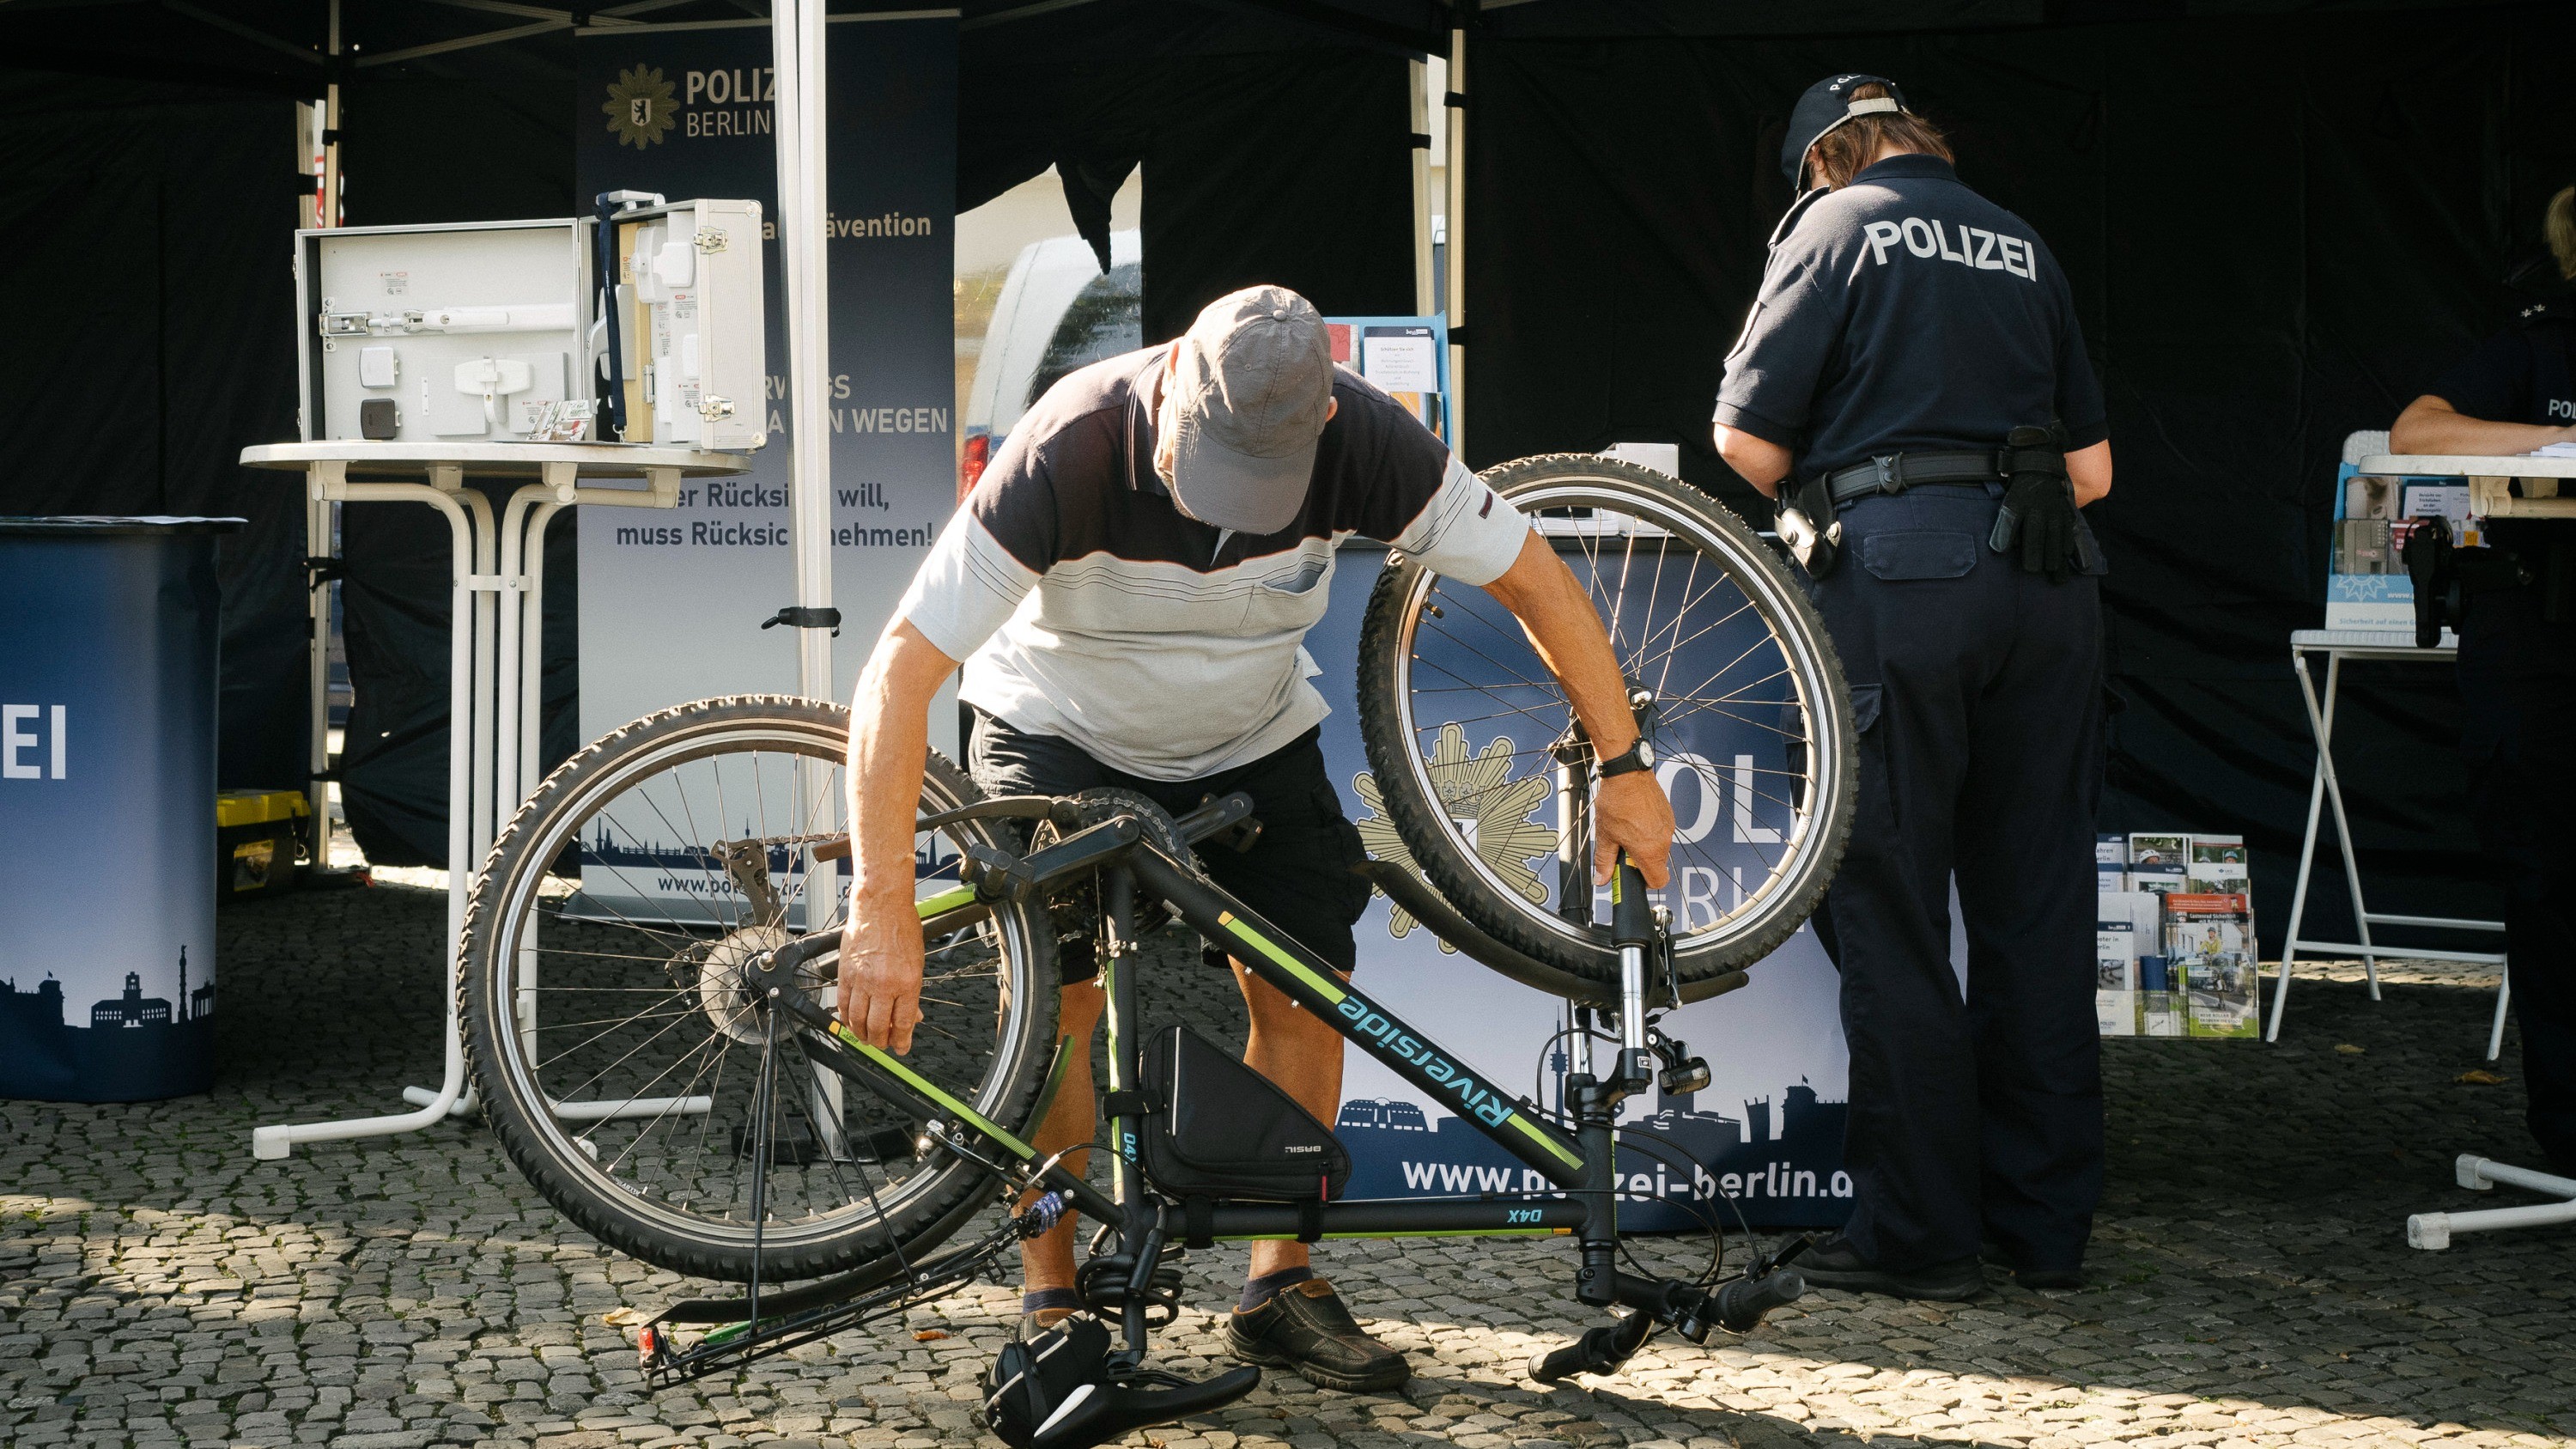 Ein älterer Herr liest die Rahmennummer von seinem umgedrehten Fahrrad ab. Im Hintergrund ist ein Aktionsstand mit der Aufschrift „Polizei Berlin“ zu sehen.